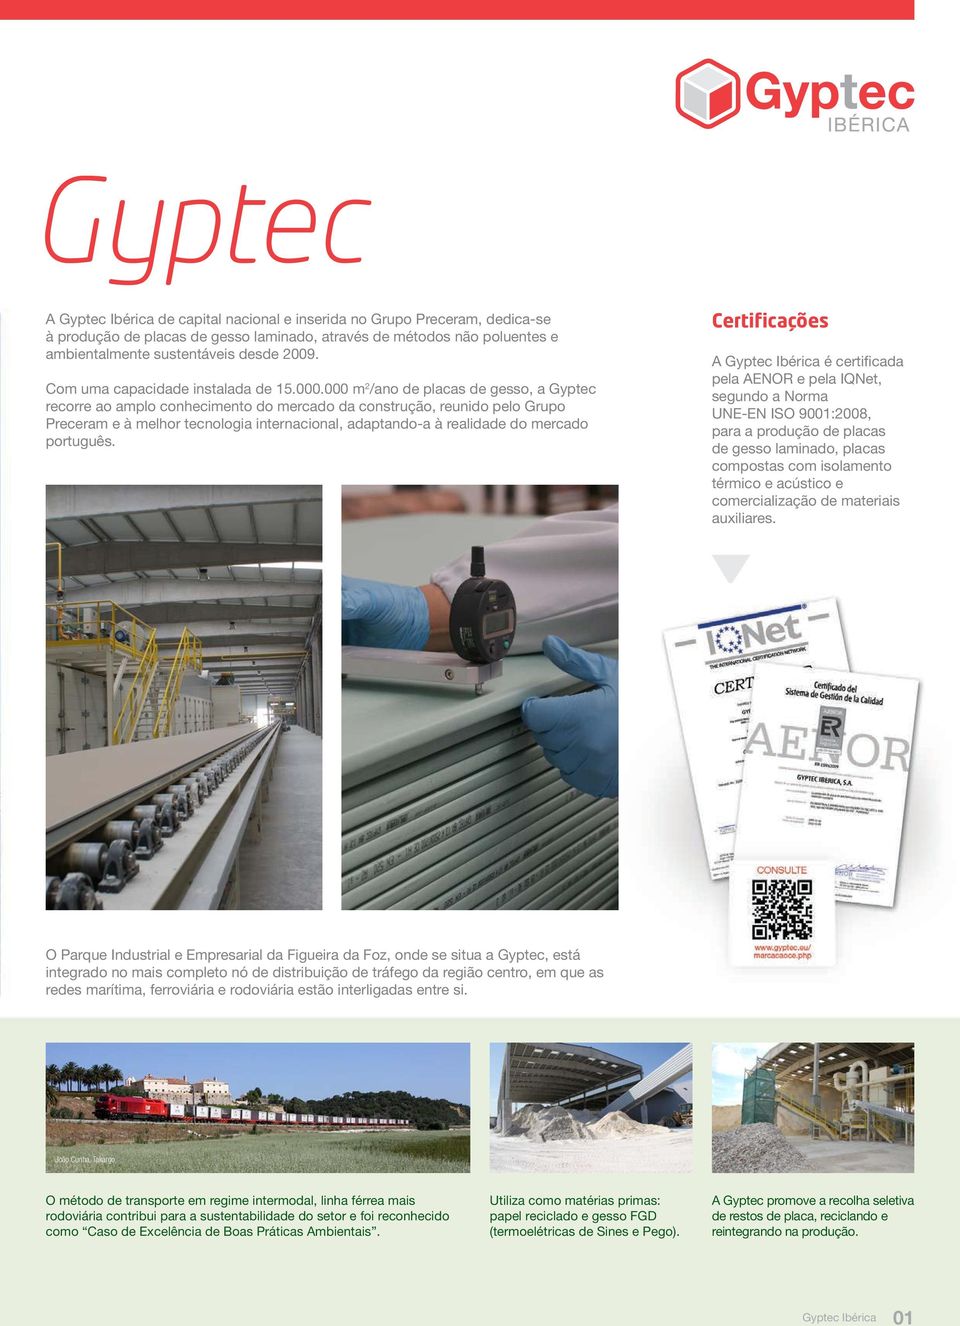 000 m 2 /ano de placas de gesso, a Gyptec recorre ao amplo conhecimento do mercado da construção, reunido pelo Grupo Preceram e à melhor tecnologia internacional, adaptando-a à realidade do mercado